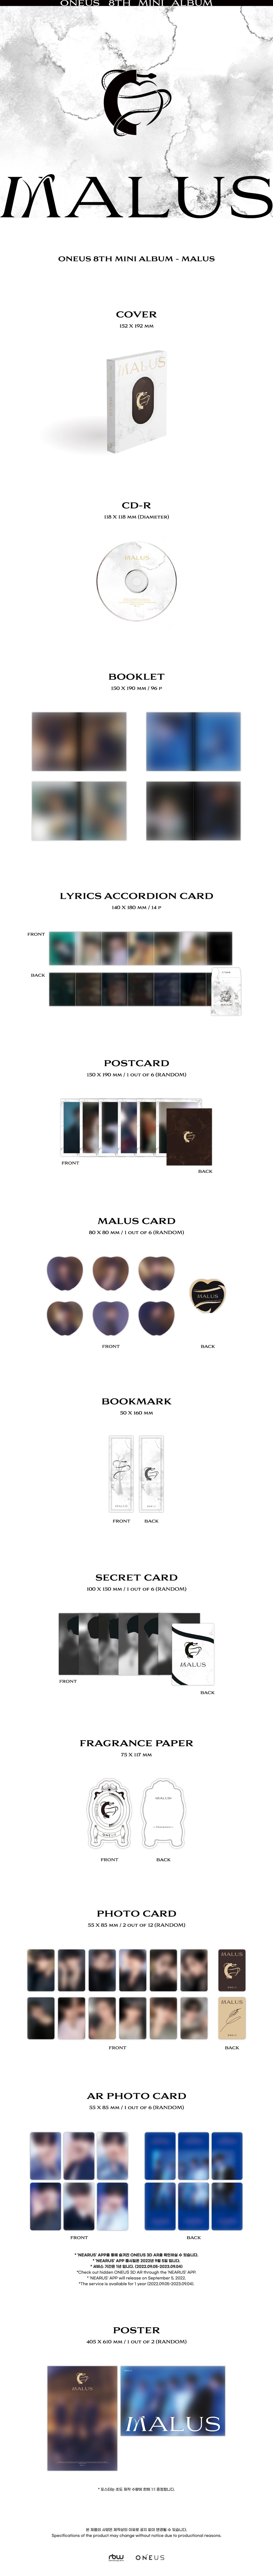 ONEUS - MALUS (8th Mini Album) Main Ver.